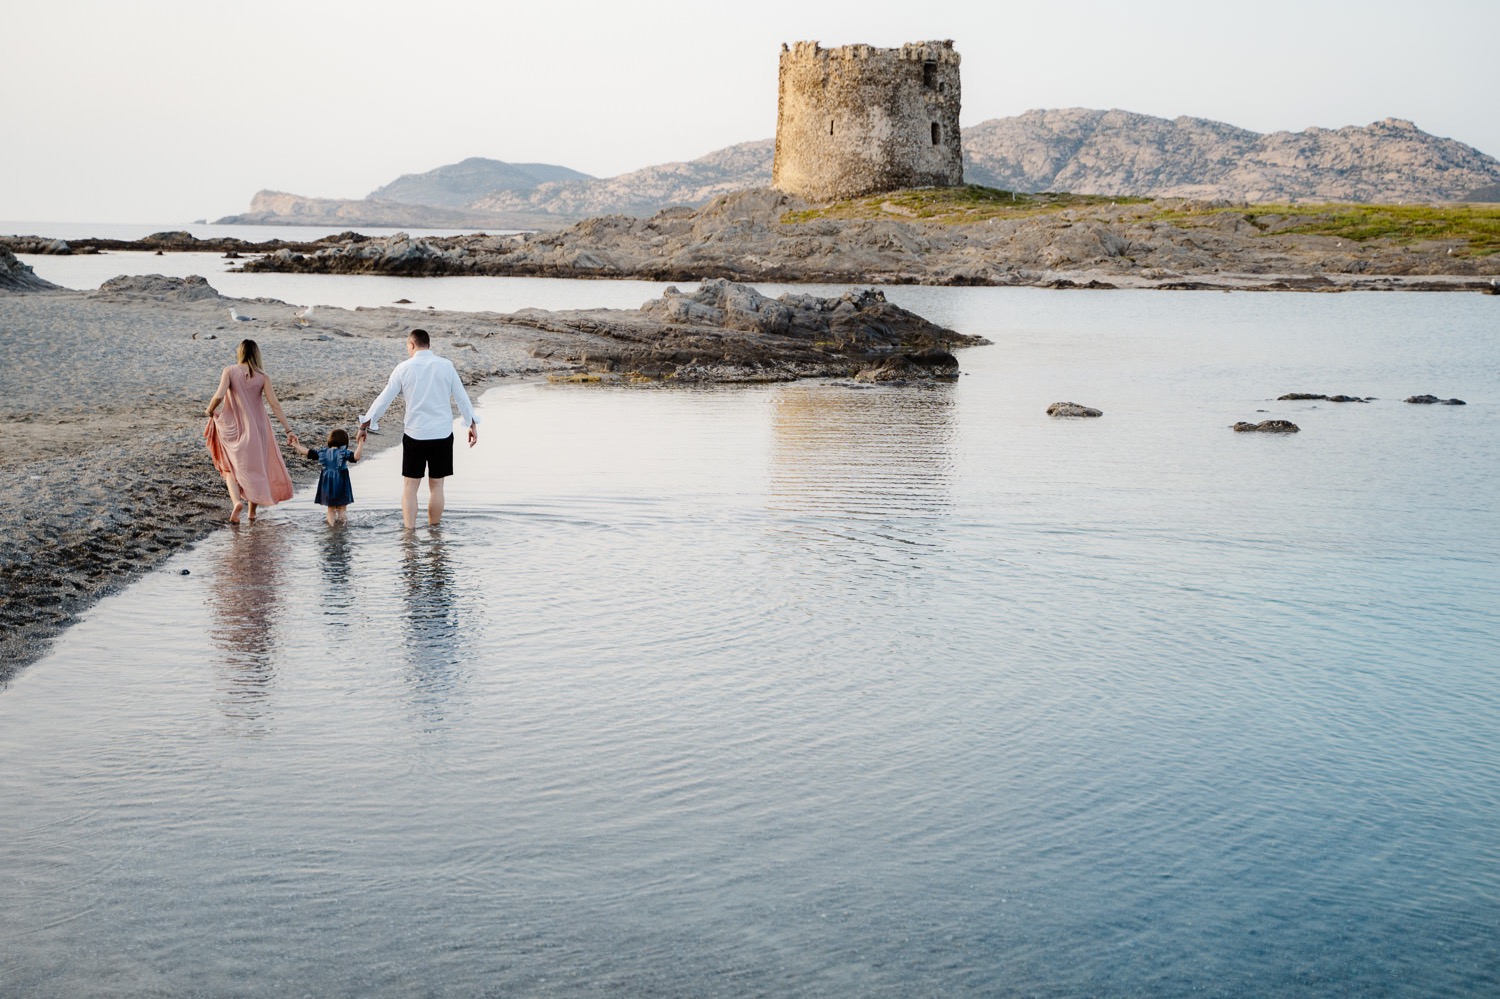 Sardinia photographer capturing family memories on the beach in Stintino